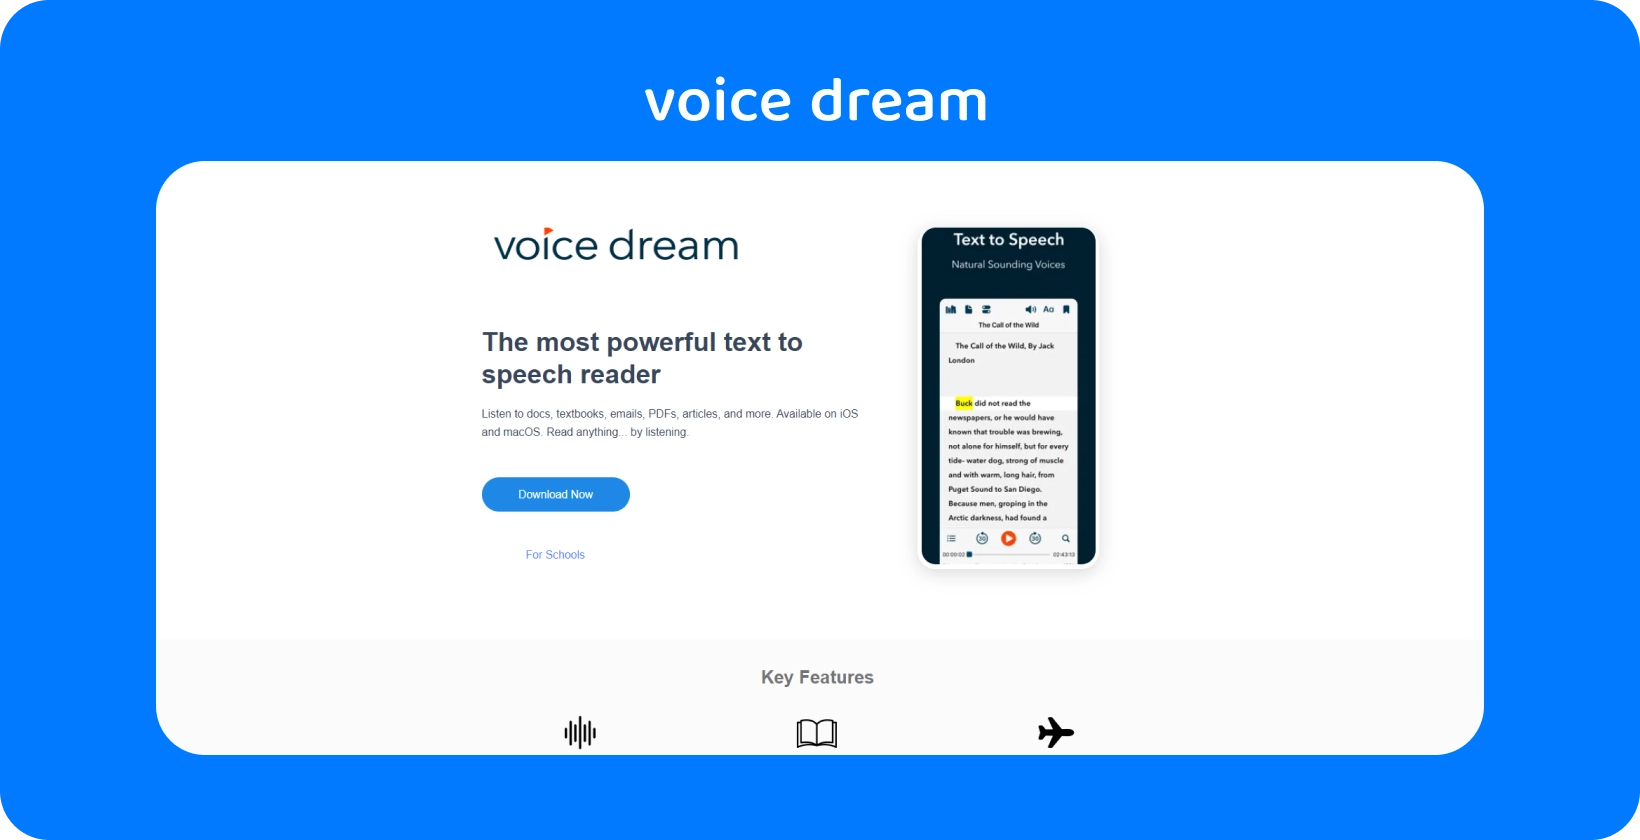 Antara muka aplikasi Voice Dream mempamerkan pembaca teks ke pertuturan yang kuat untuk pelbagai dokumen pada peranti mudah alih.